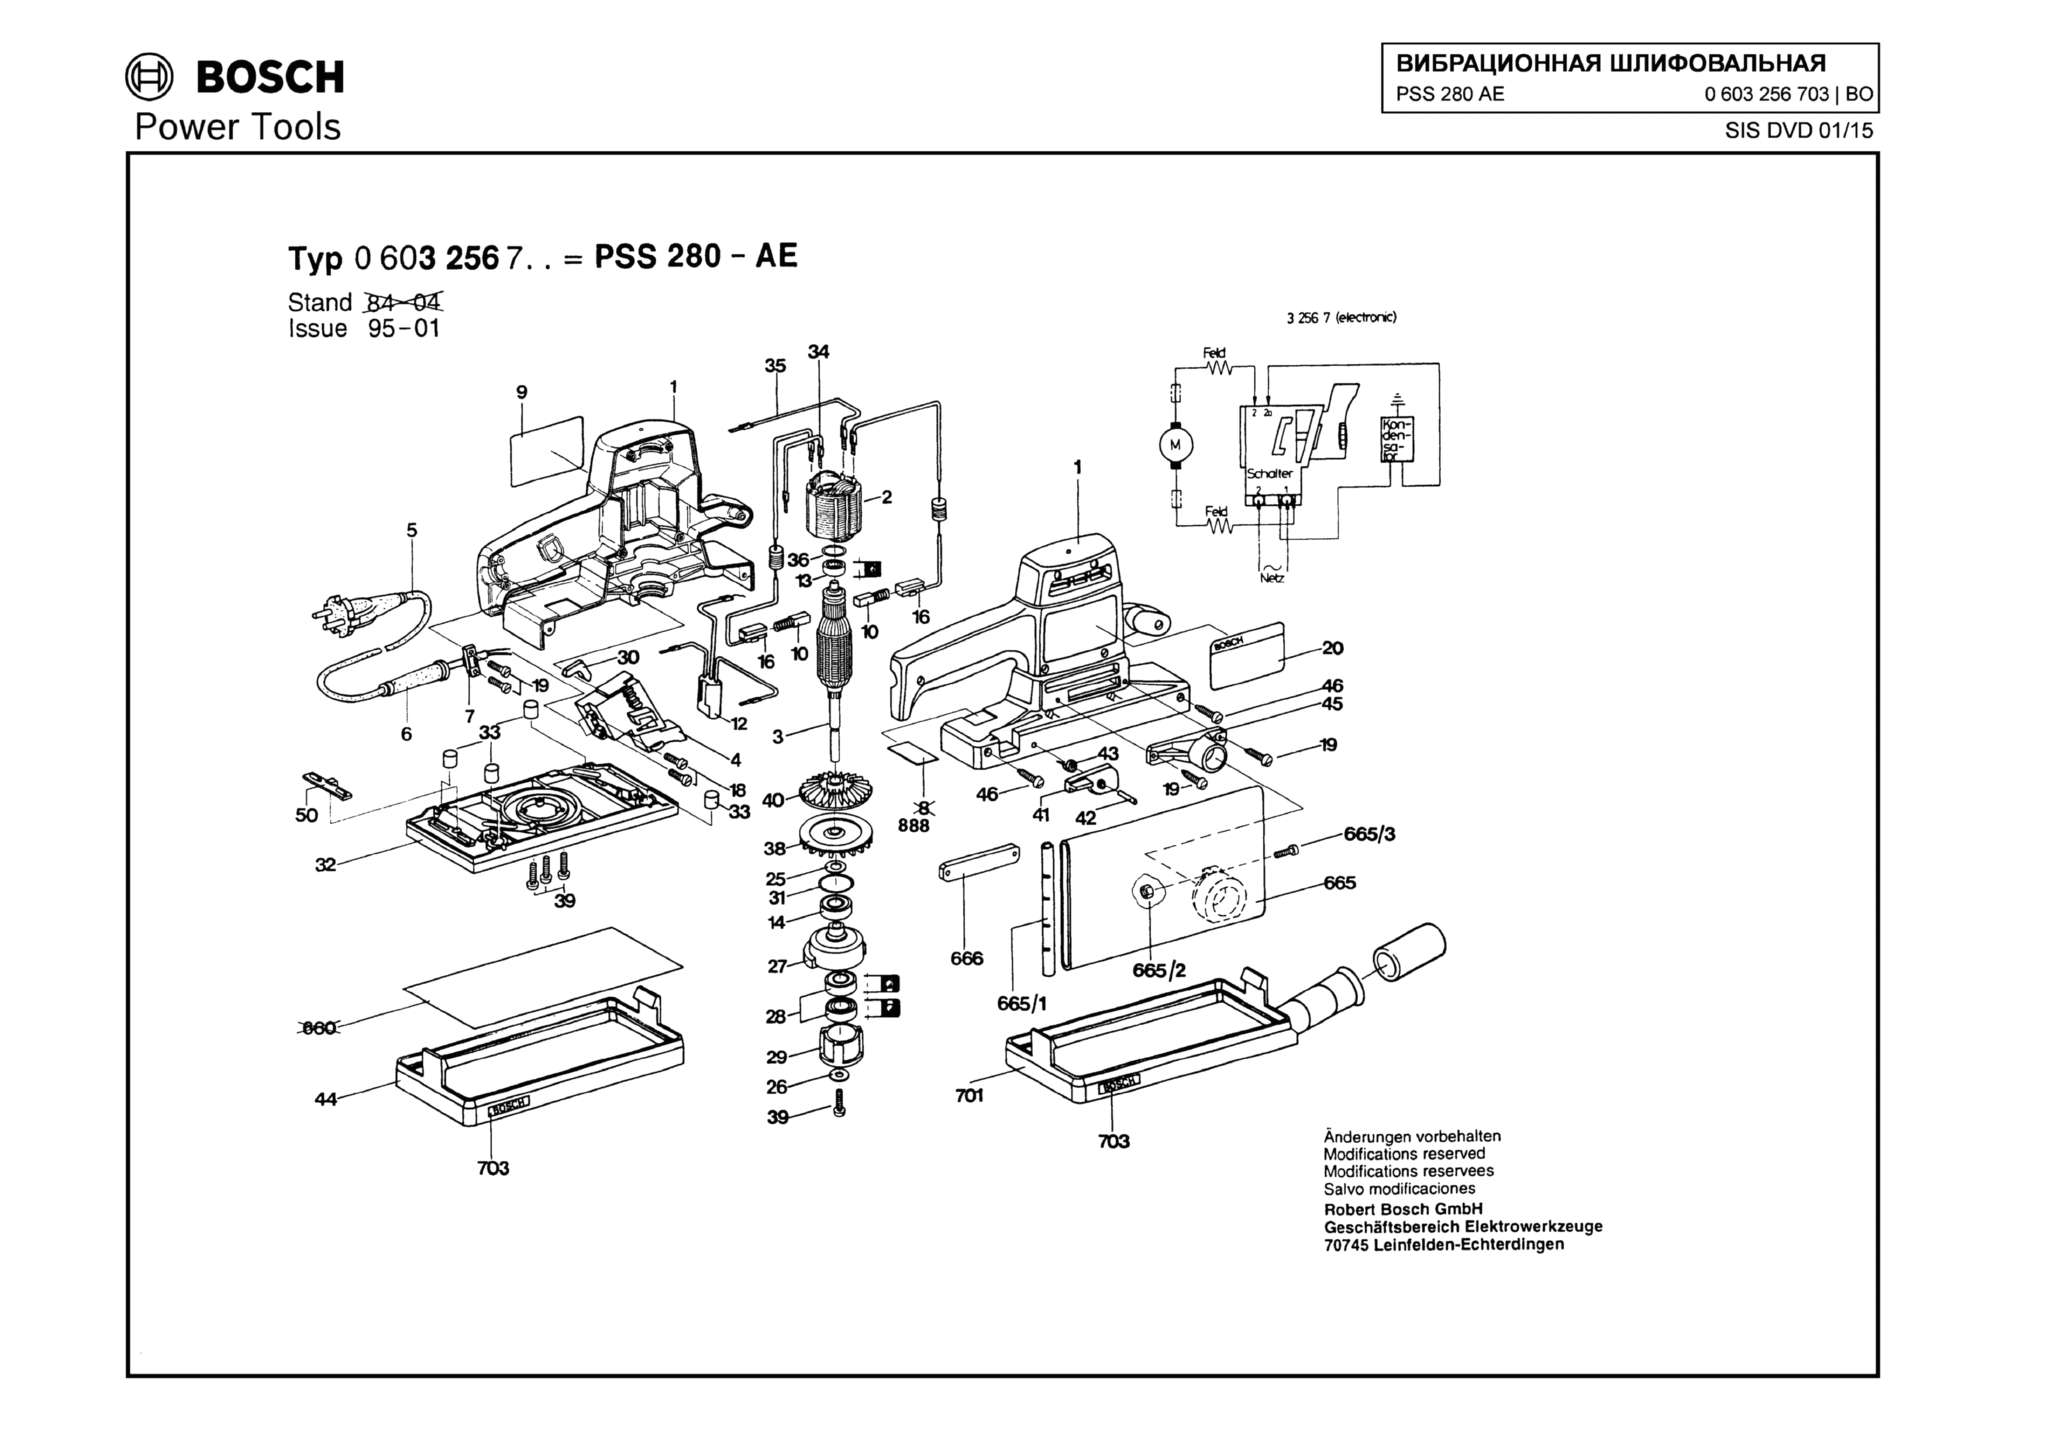 Запчасти, схема и деталировка Bosch PSS 280 AE (ТИП 0603256703)